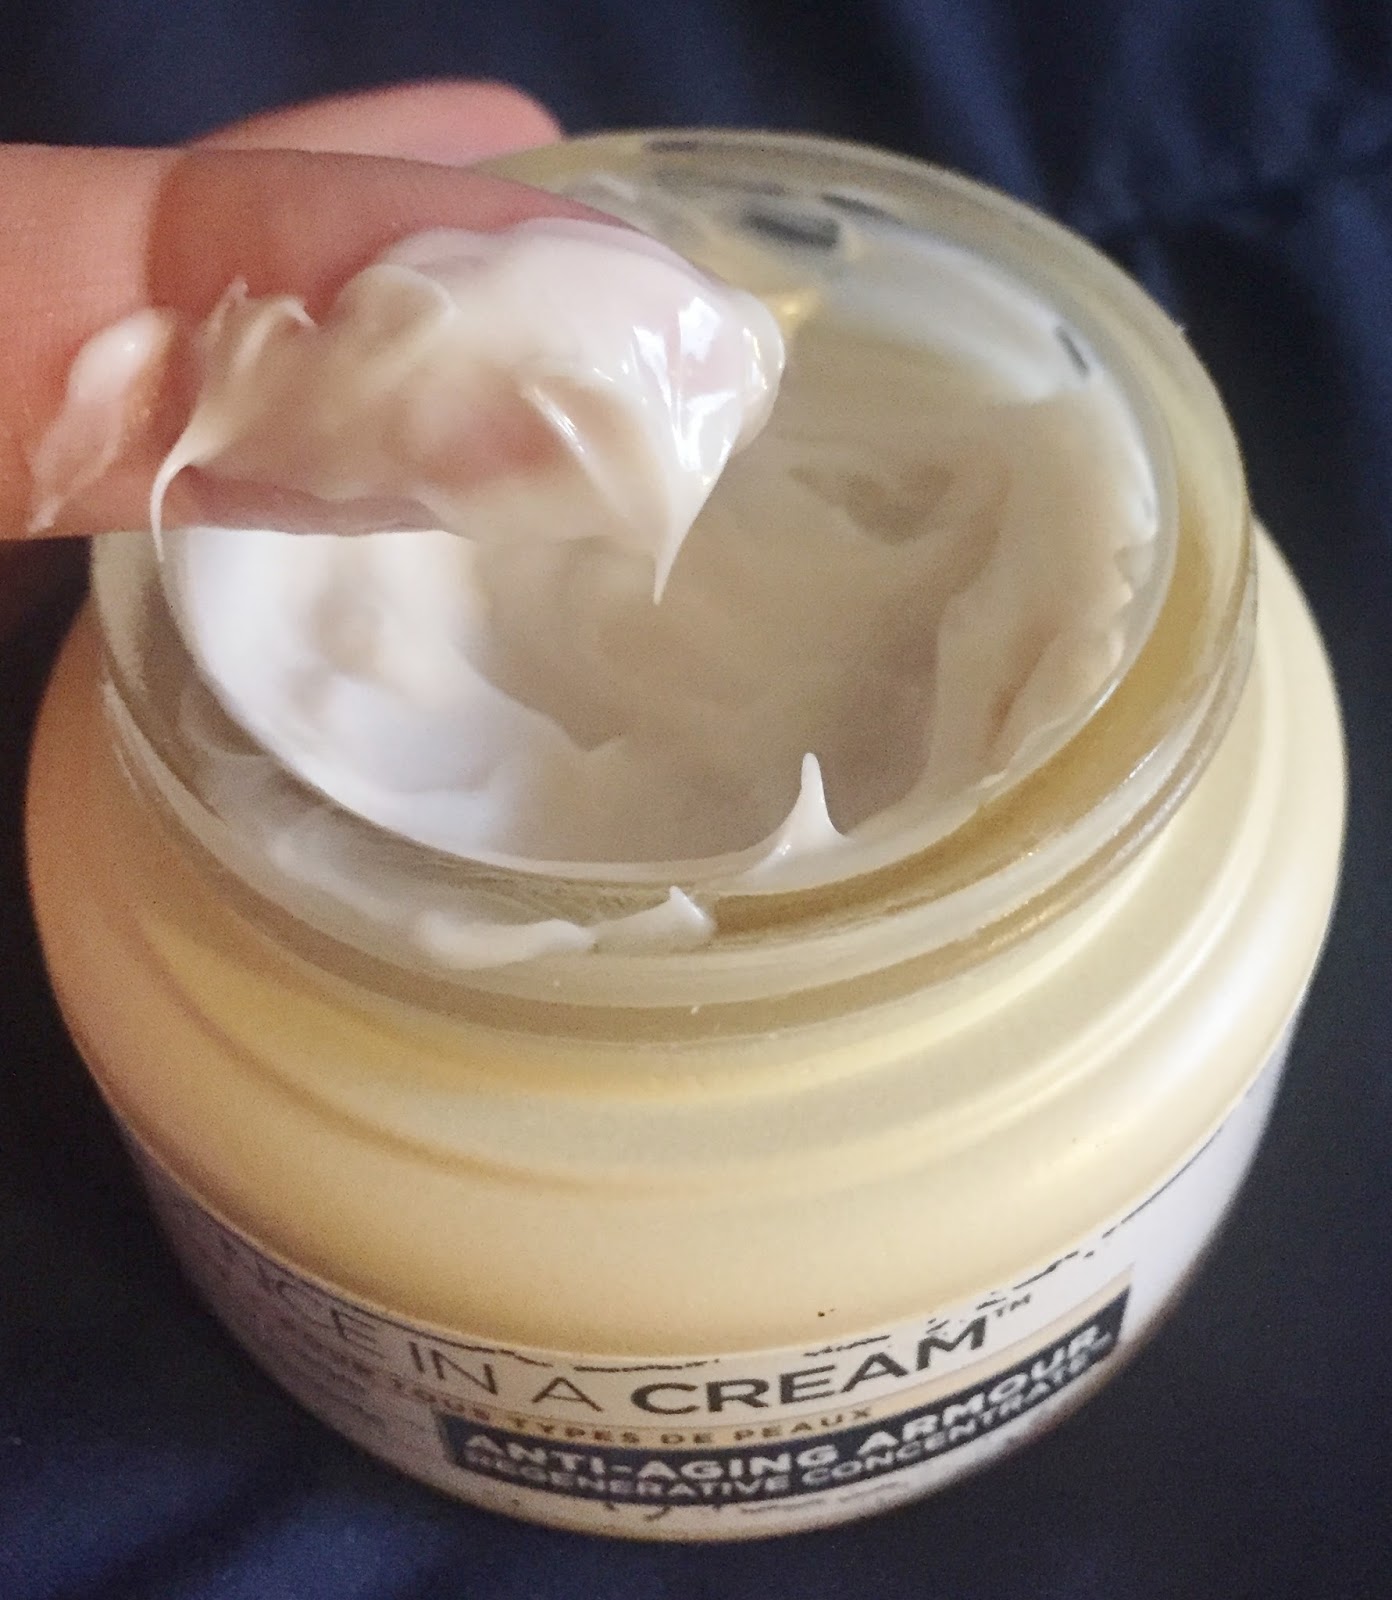 à¸à¸¥à¸à¸²à¸£à¸à¹à¸à¸«à¸²à¸£à¸¹à¸à¸à¸²à¸à¸ªà¸³à¸«à¸£à¸±à¸ it cosmetics confidence in a cream